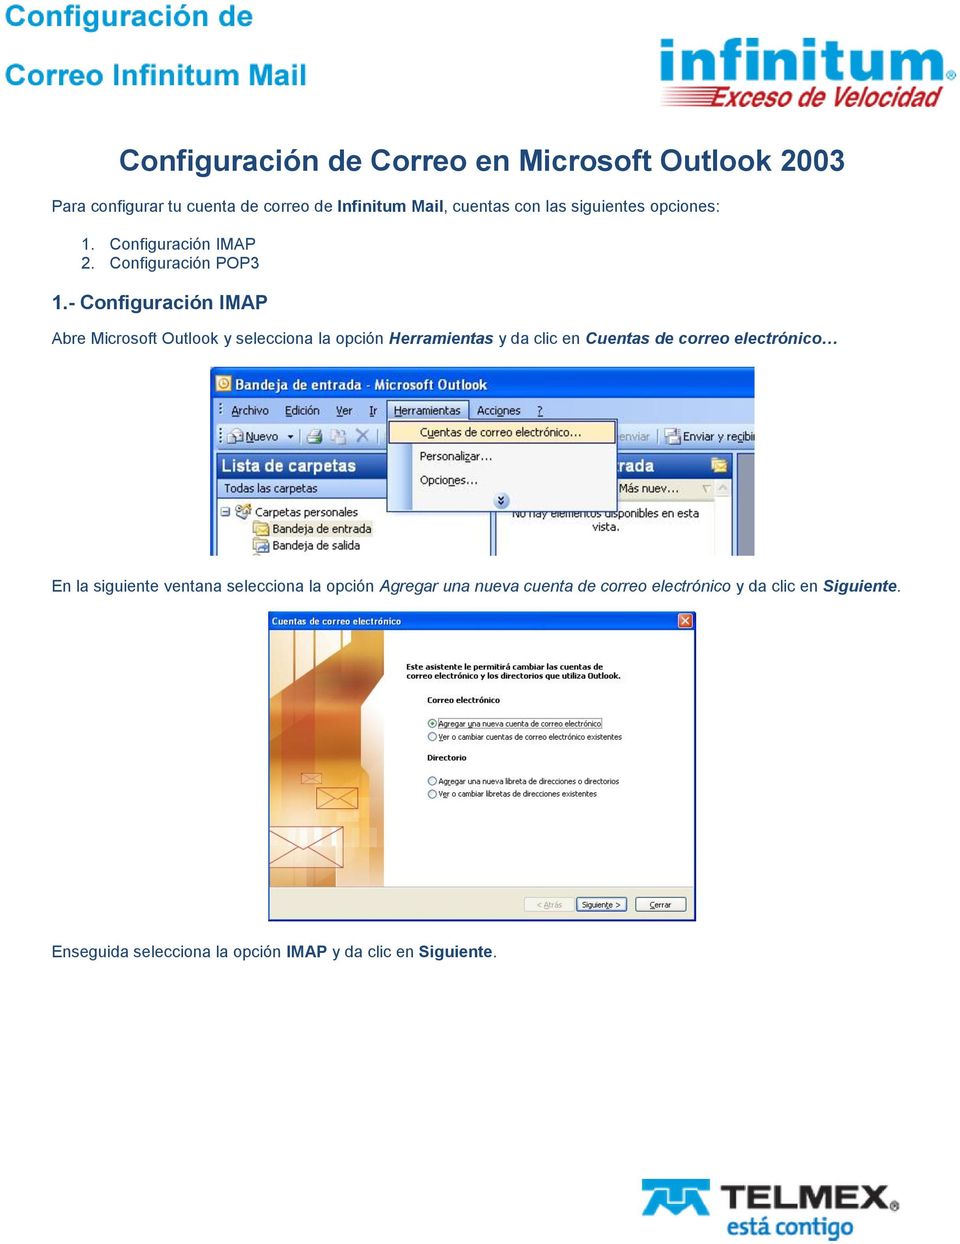 - Configuración IMAP Abre Microsoft Outlook y selecciona la opción Herramientas y da clic en Cuentas de correo